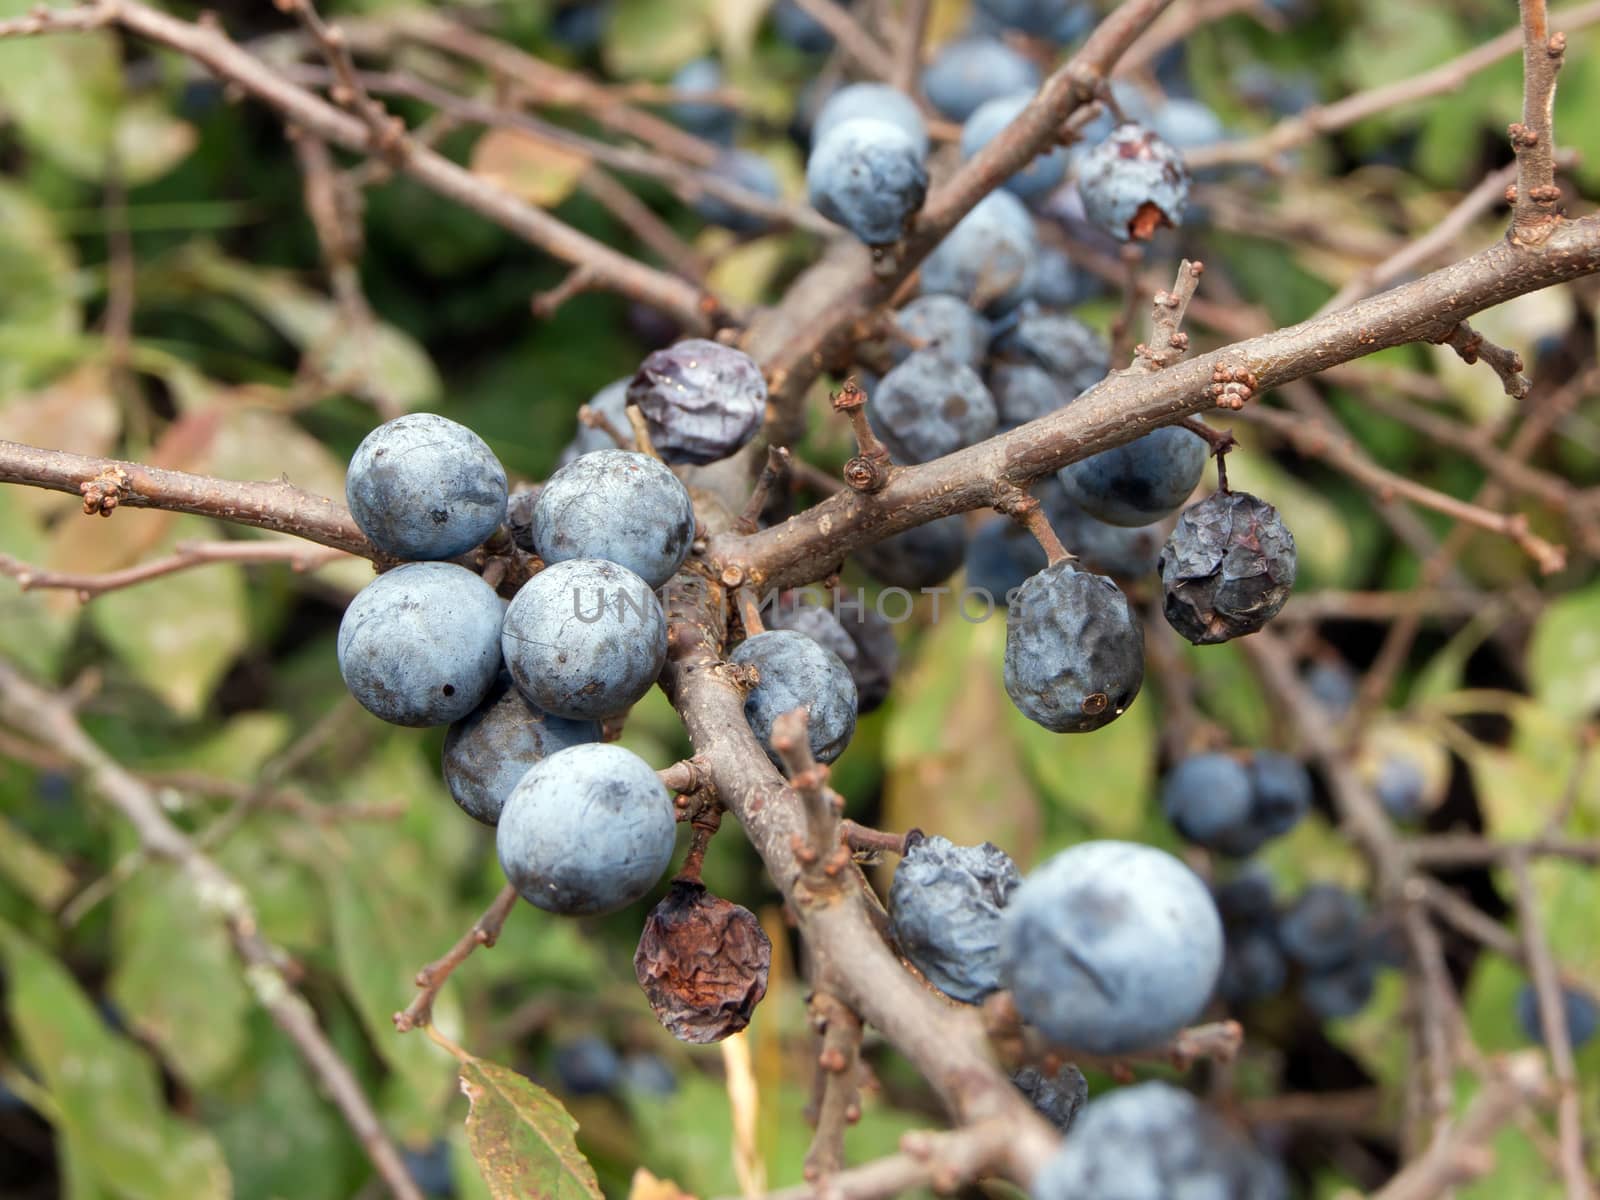 blue sloes (Prunus spinosa) by dadalia